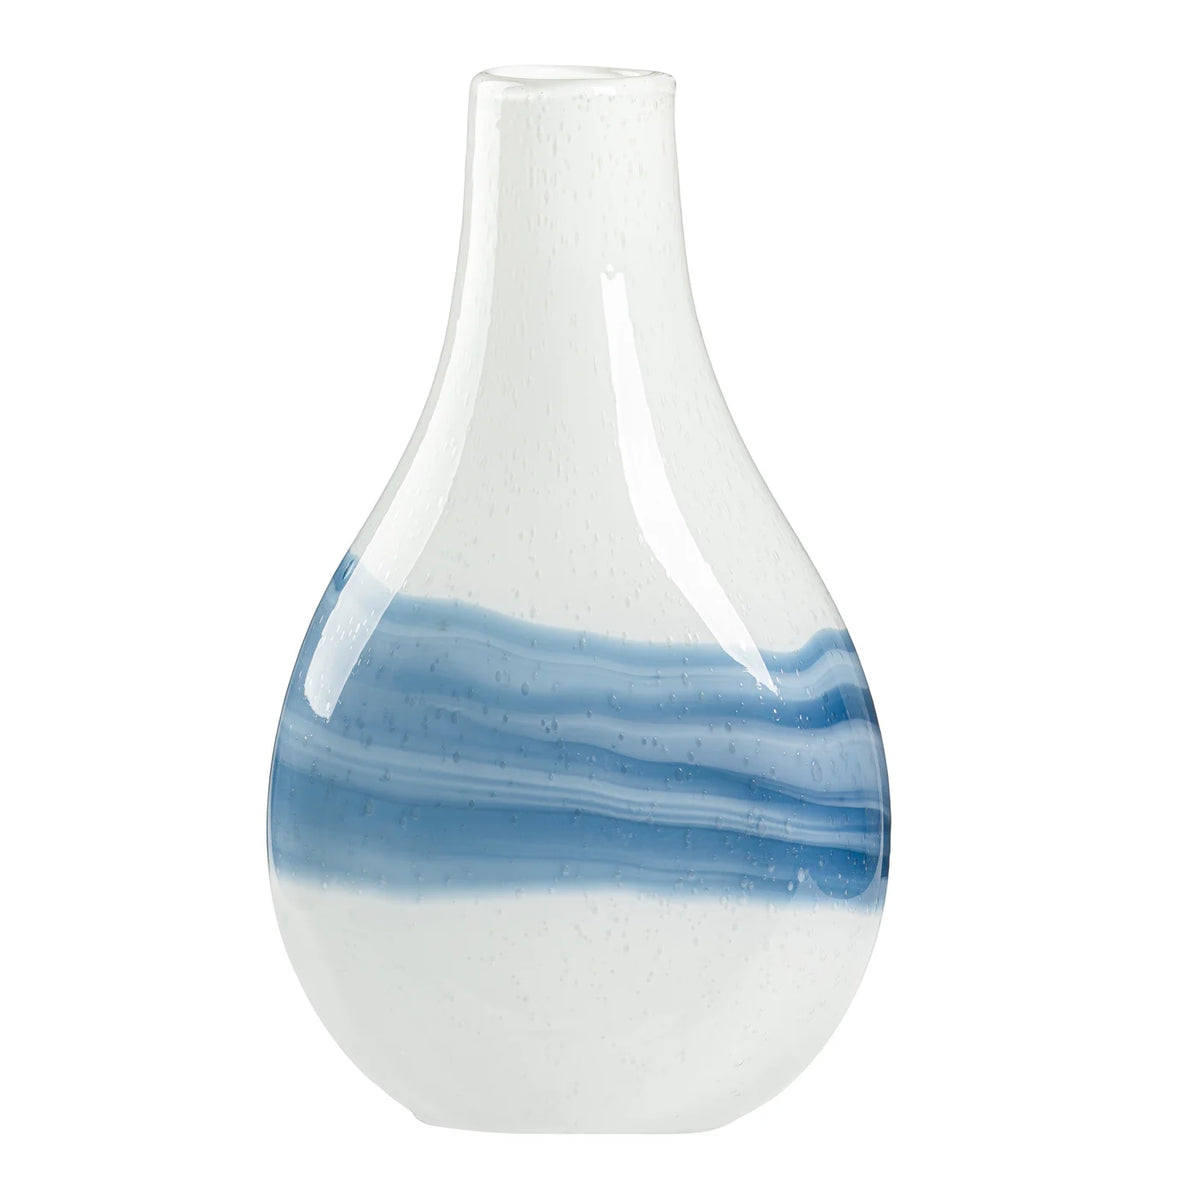 Andrea Swirl Glass Bulb Vase - White 14.25"H